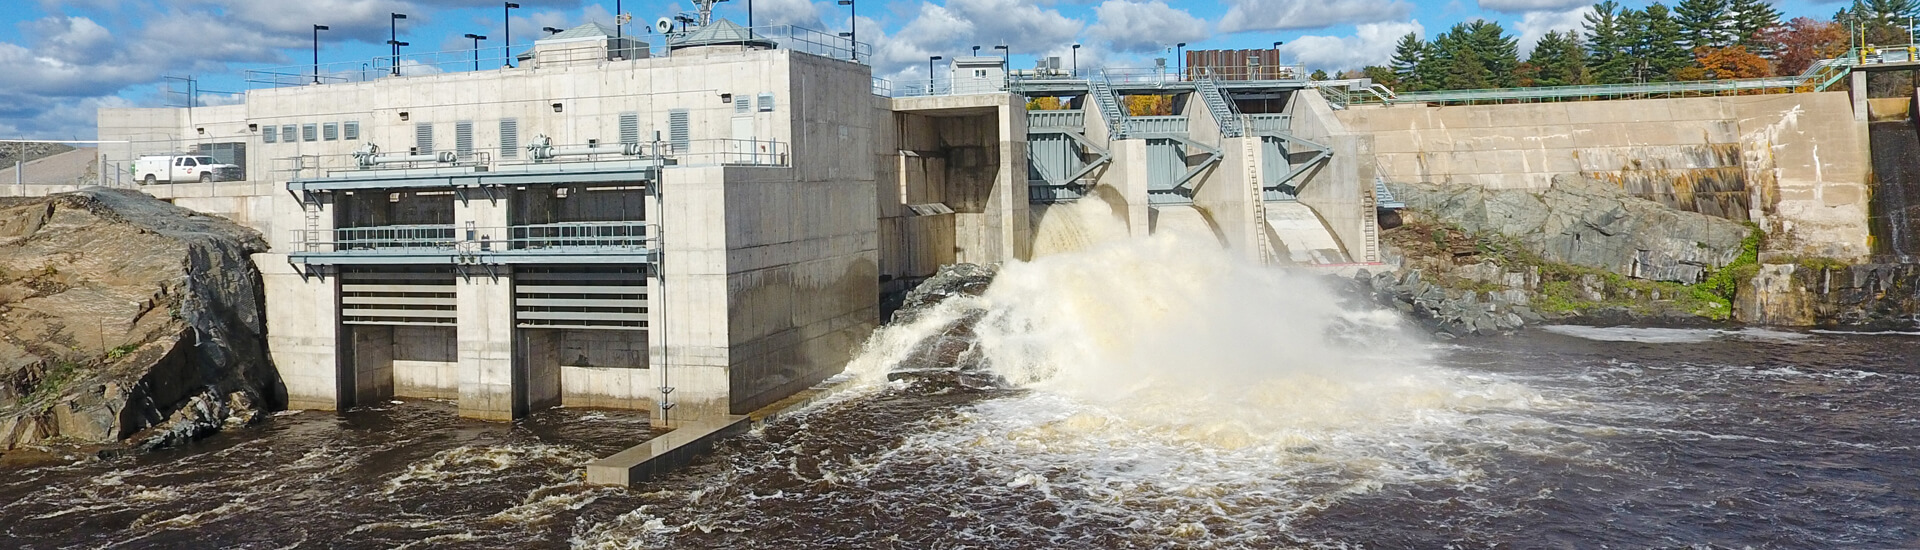 twin falls hydro dam